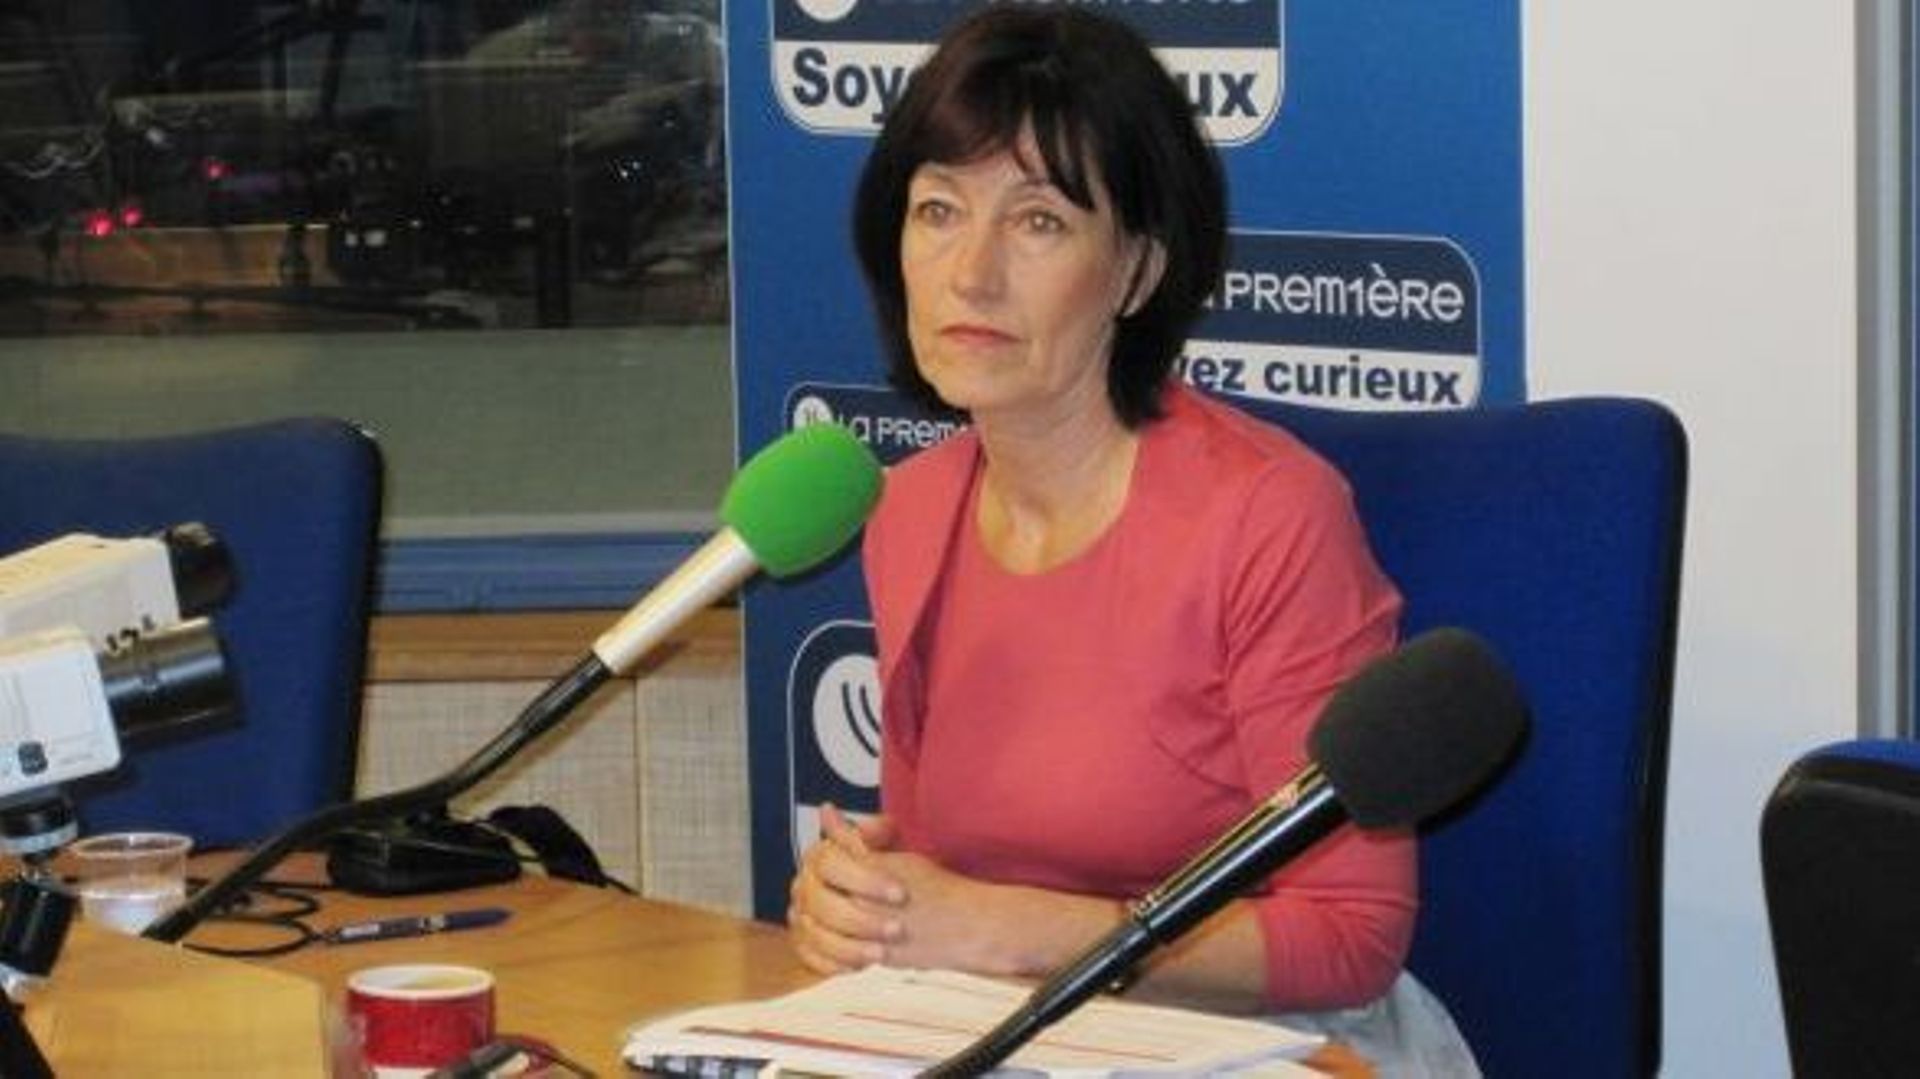 Laurette Onkelink, vice-Première ministre socialiste